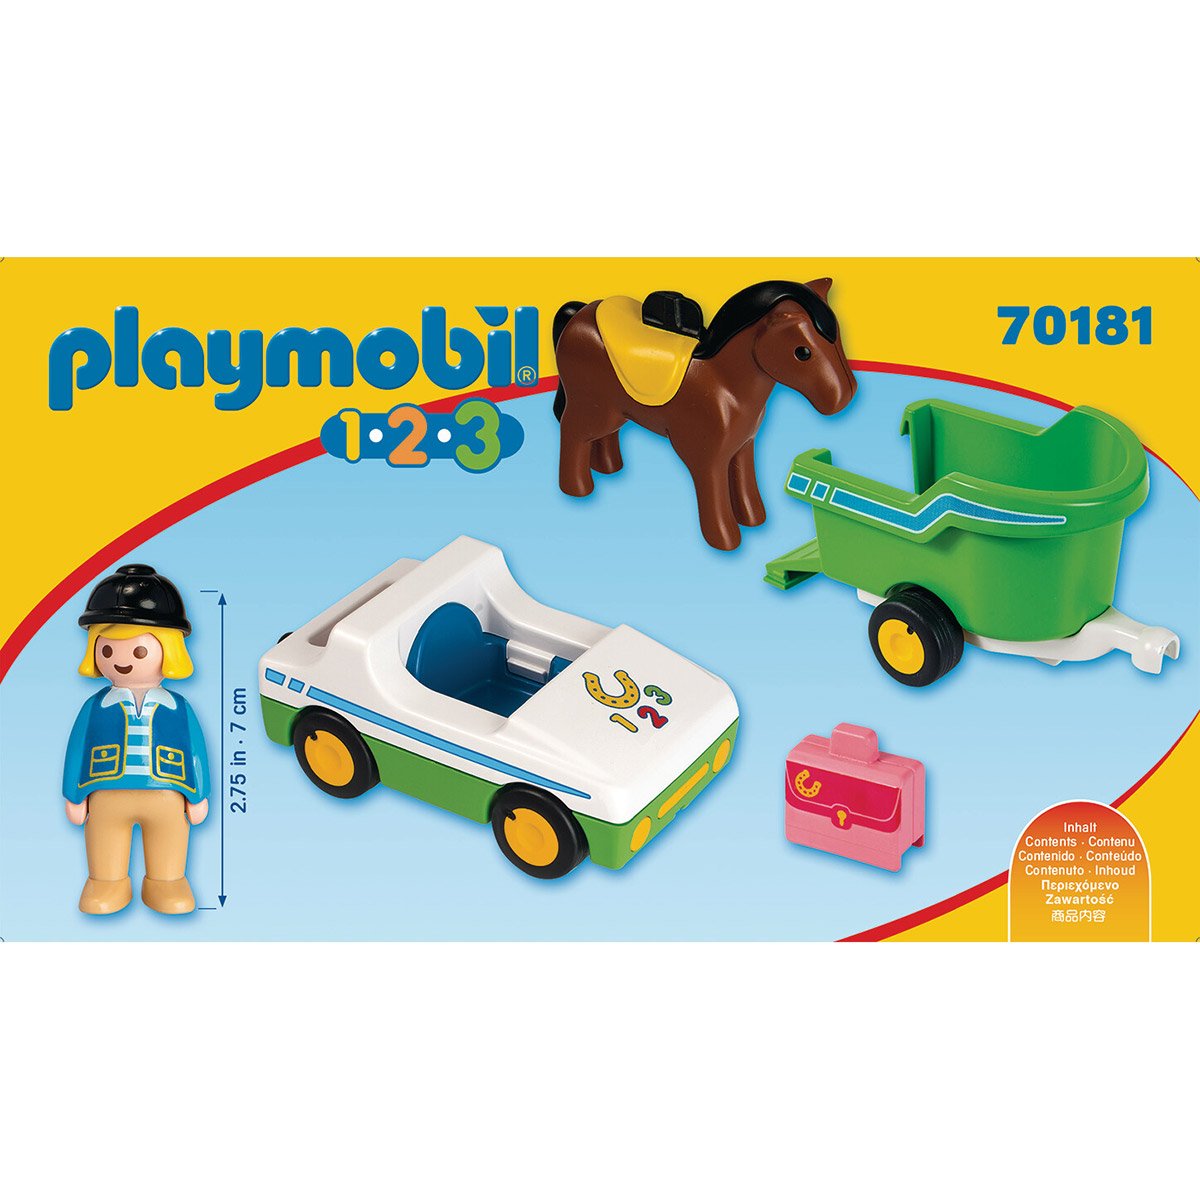 Enfant avec tracteur et remorque Playmobil 4943 - La Grande Récré